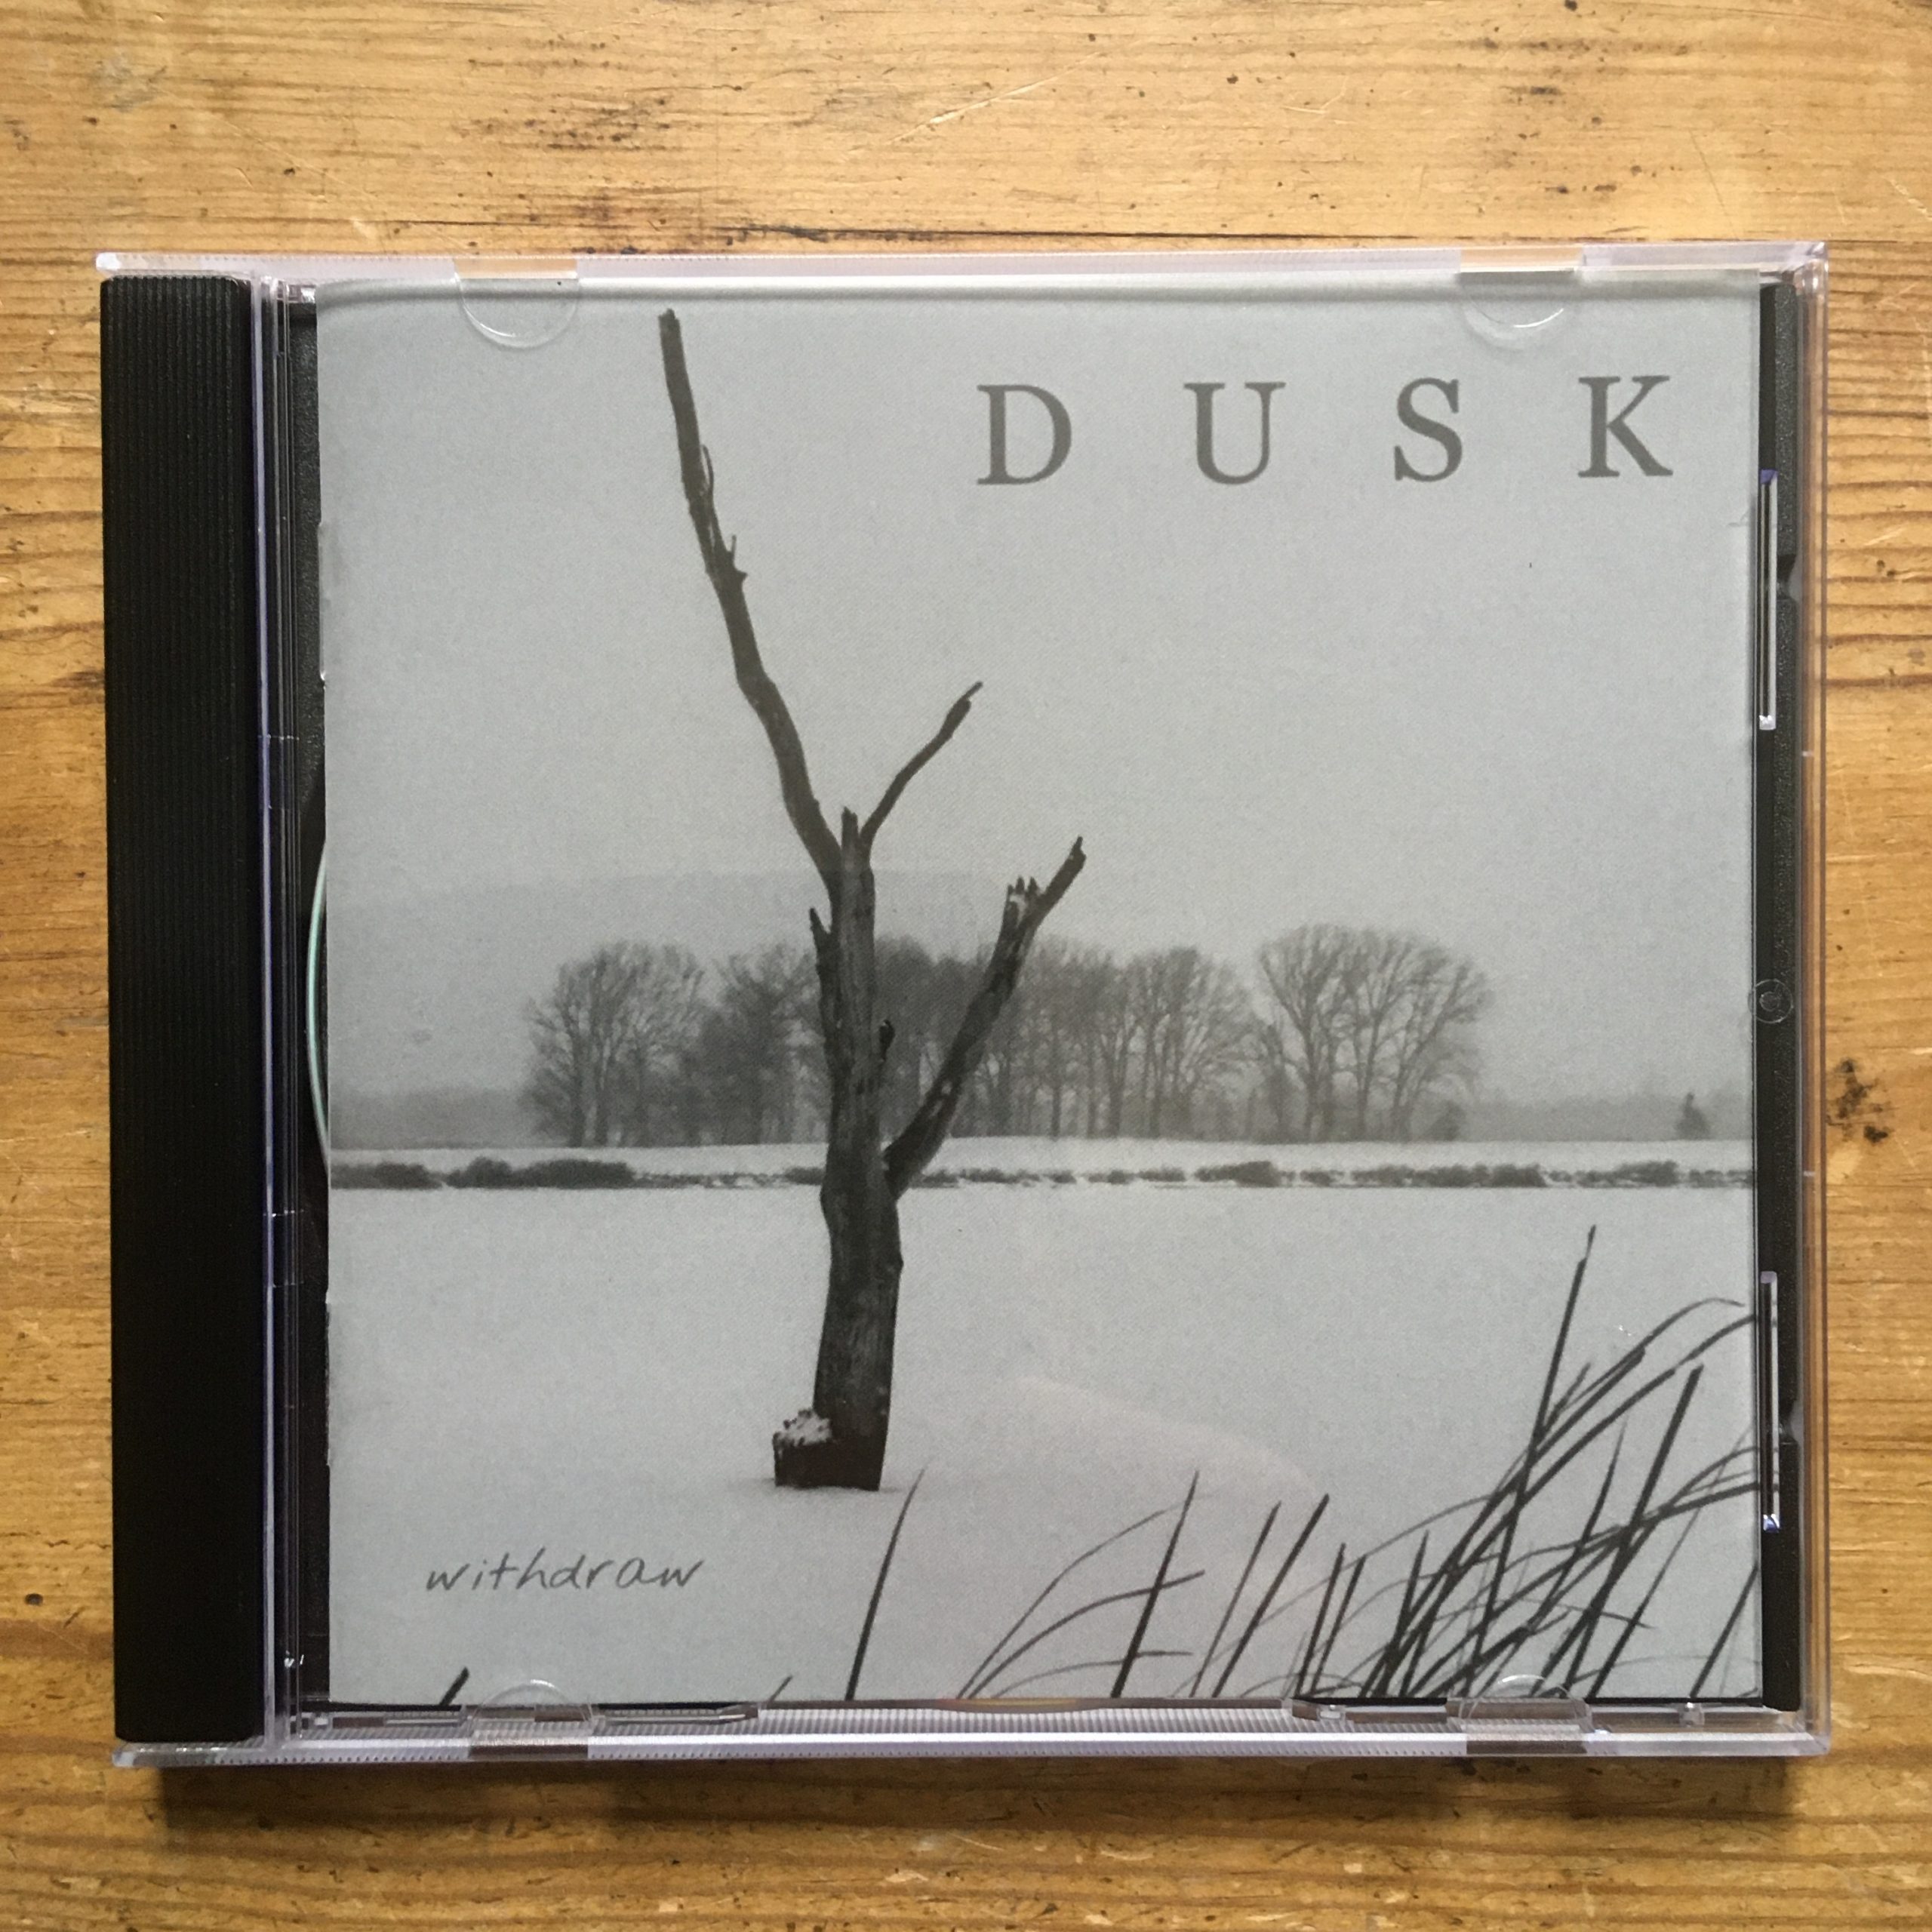 Photo of the Dusk - 